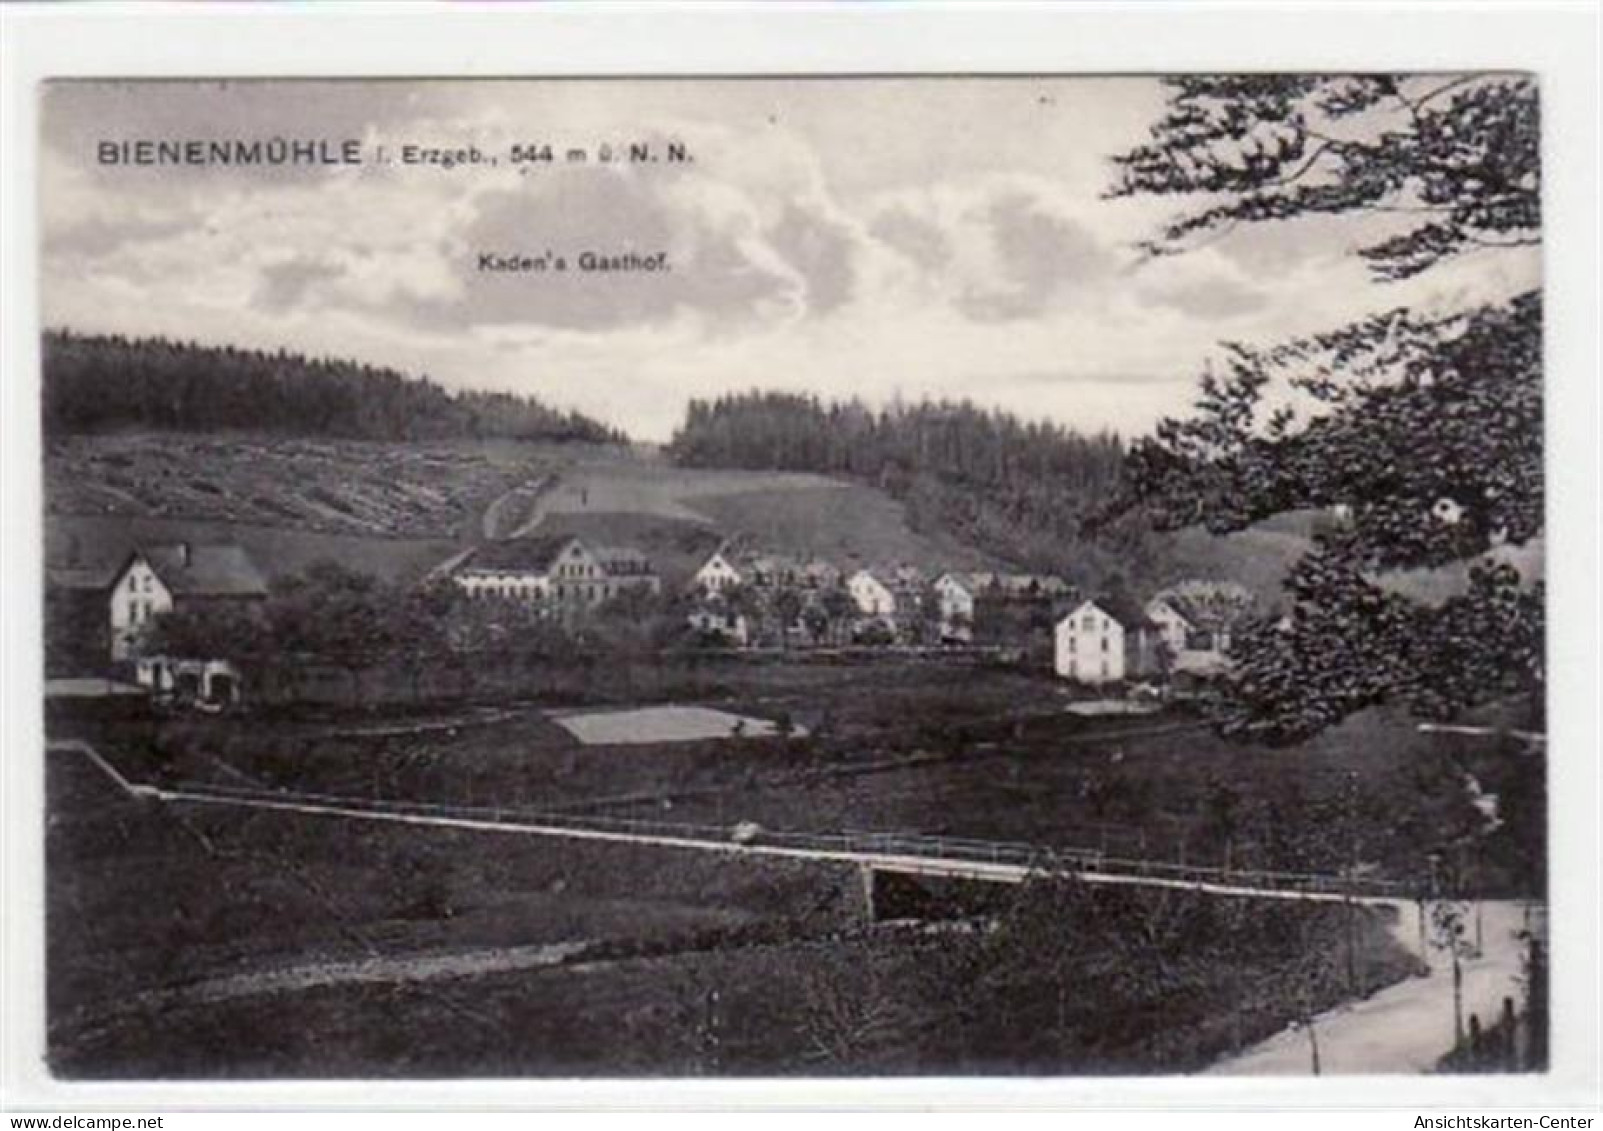 39033506 - Bienenmuehle Mit Kadens Gasthof. Feldpost, Mit Stempel Von 1914. Gute Erhaltung. - Rechenberg-Bienenmühle